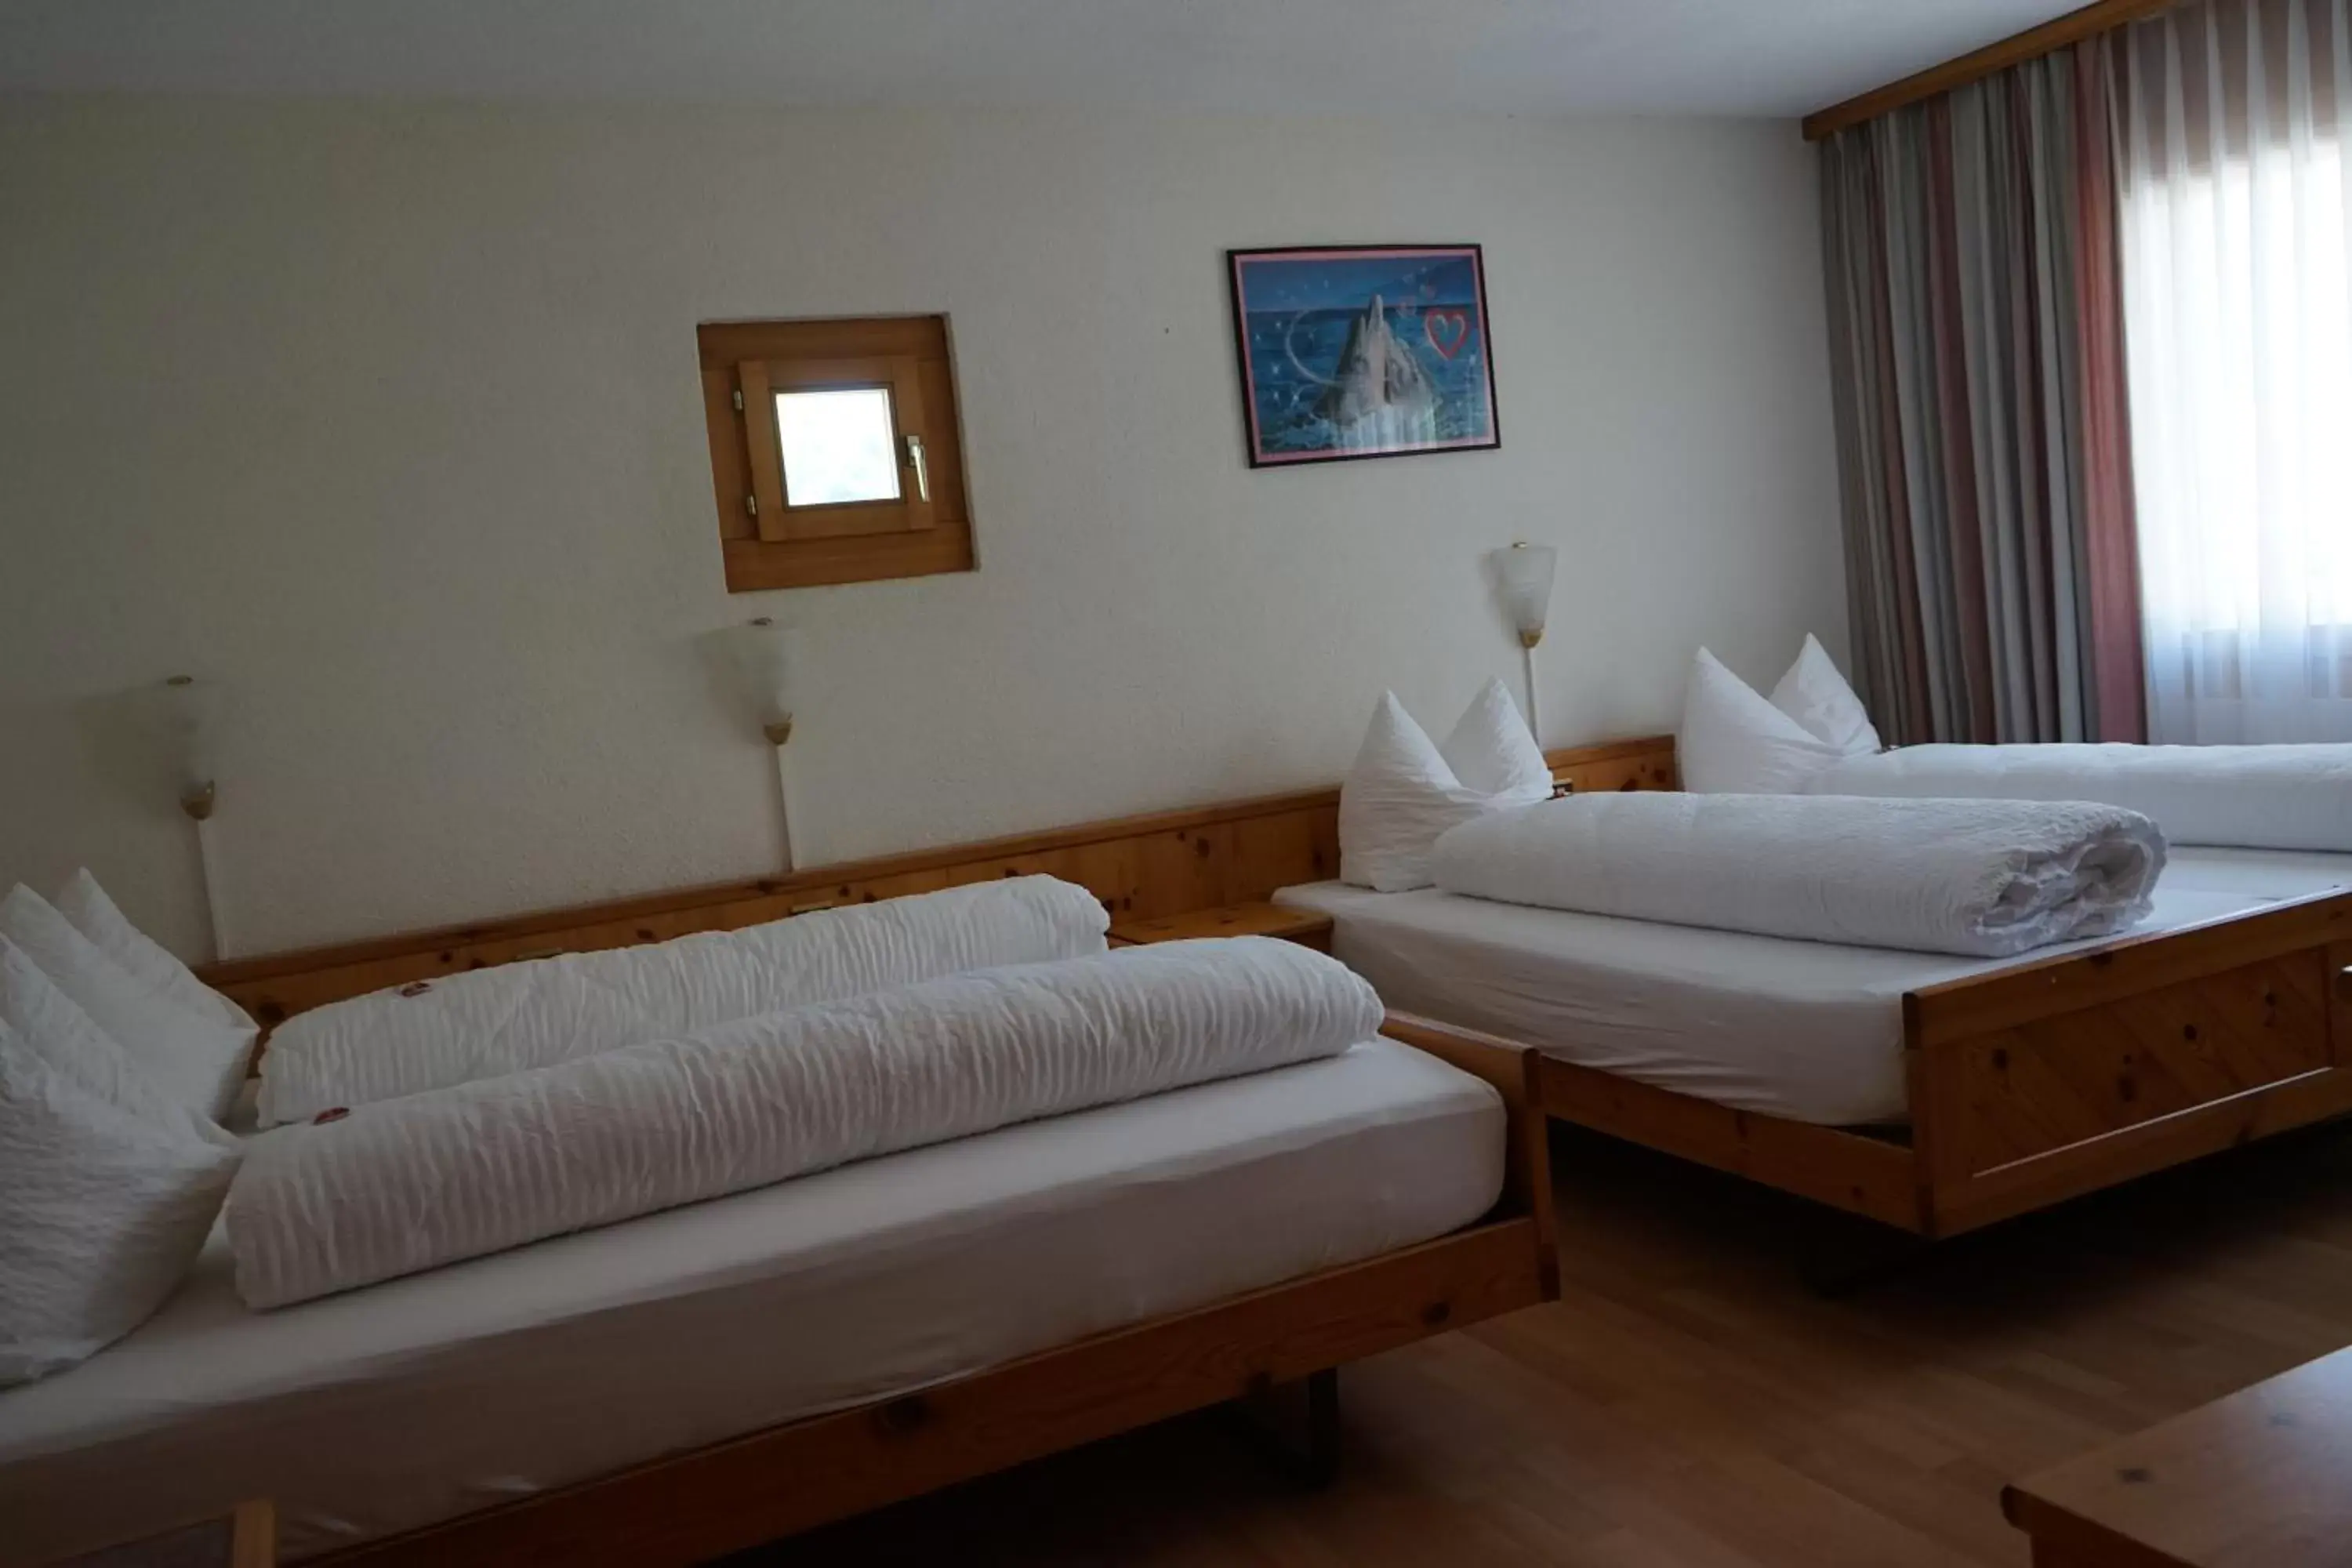 Bed in Hotel Schiffahrt